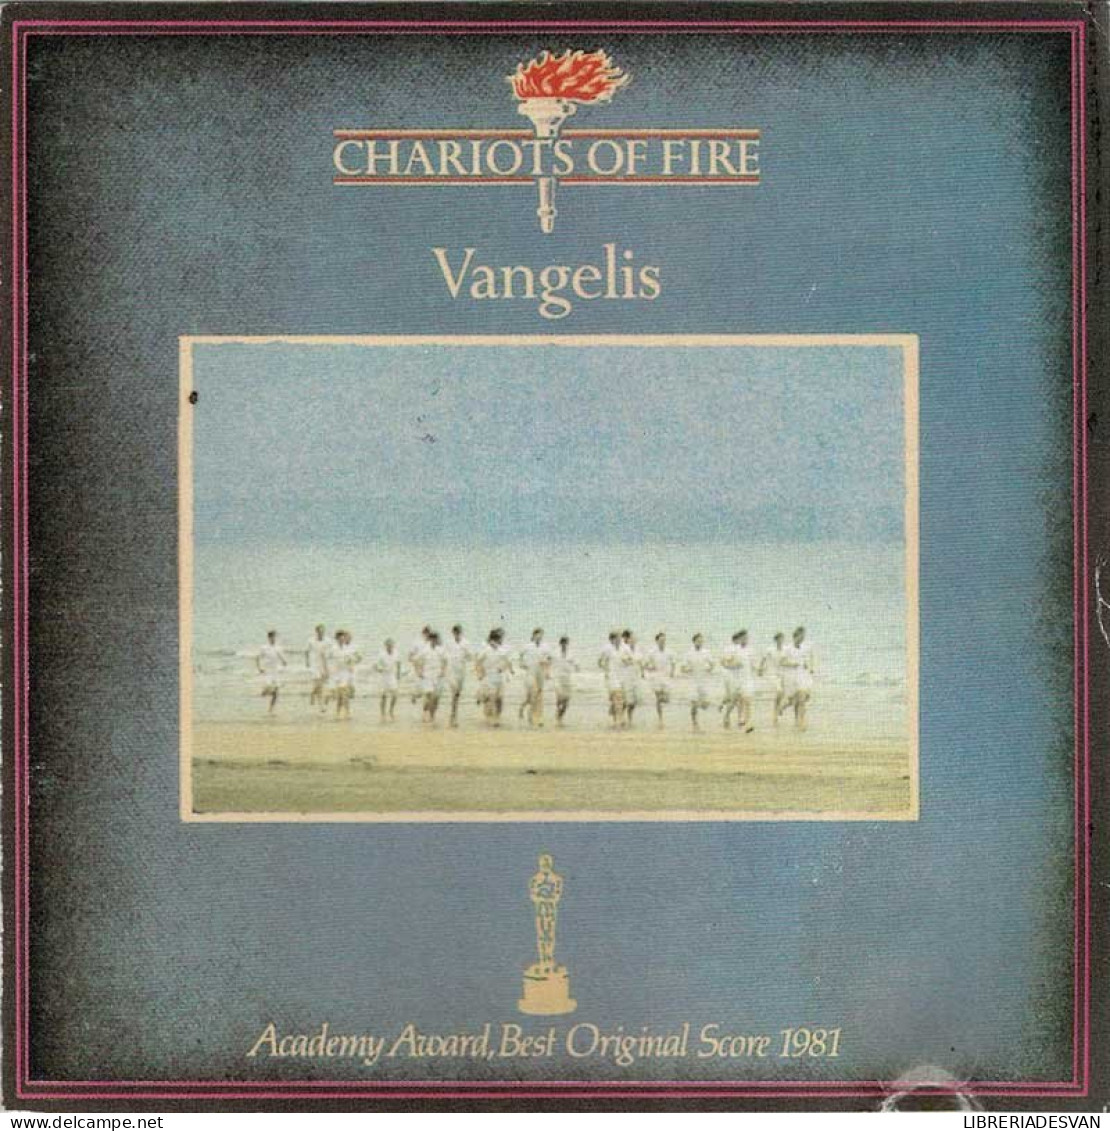 Vangelis - Chariots Of Fire. CD - Soundtracks, Film Music